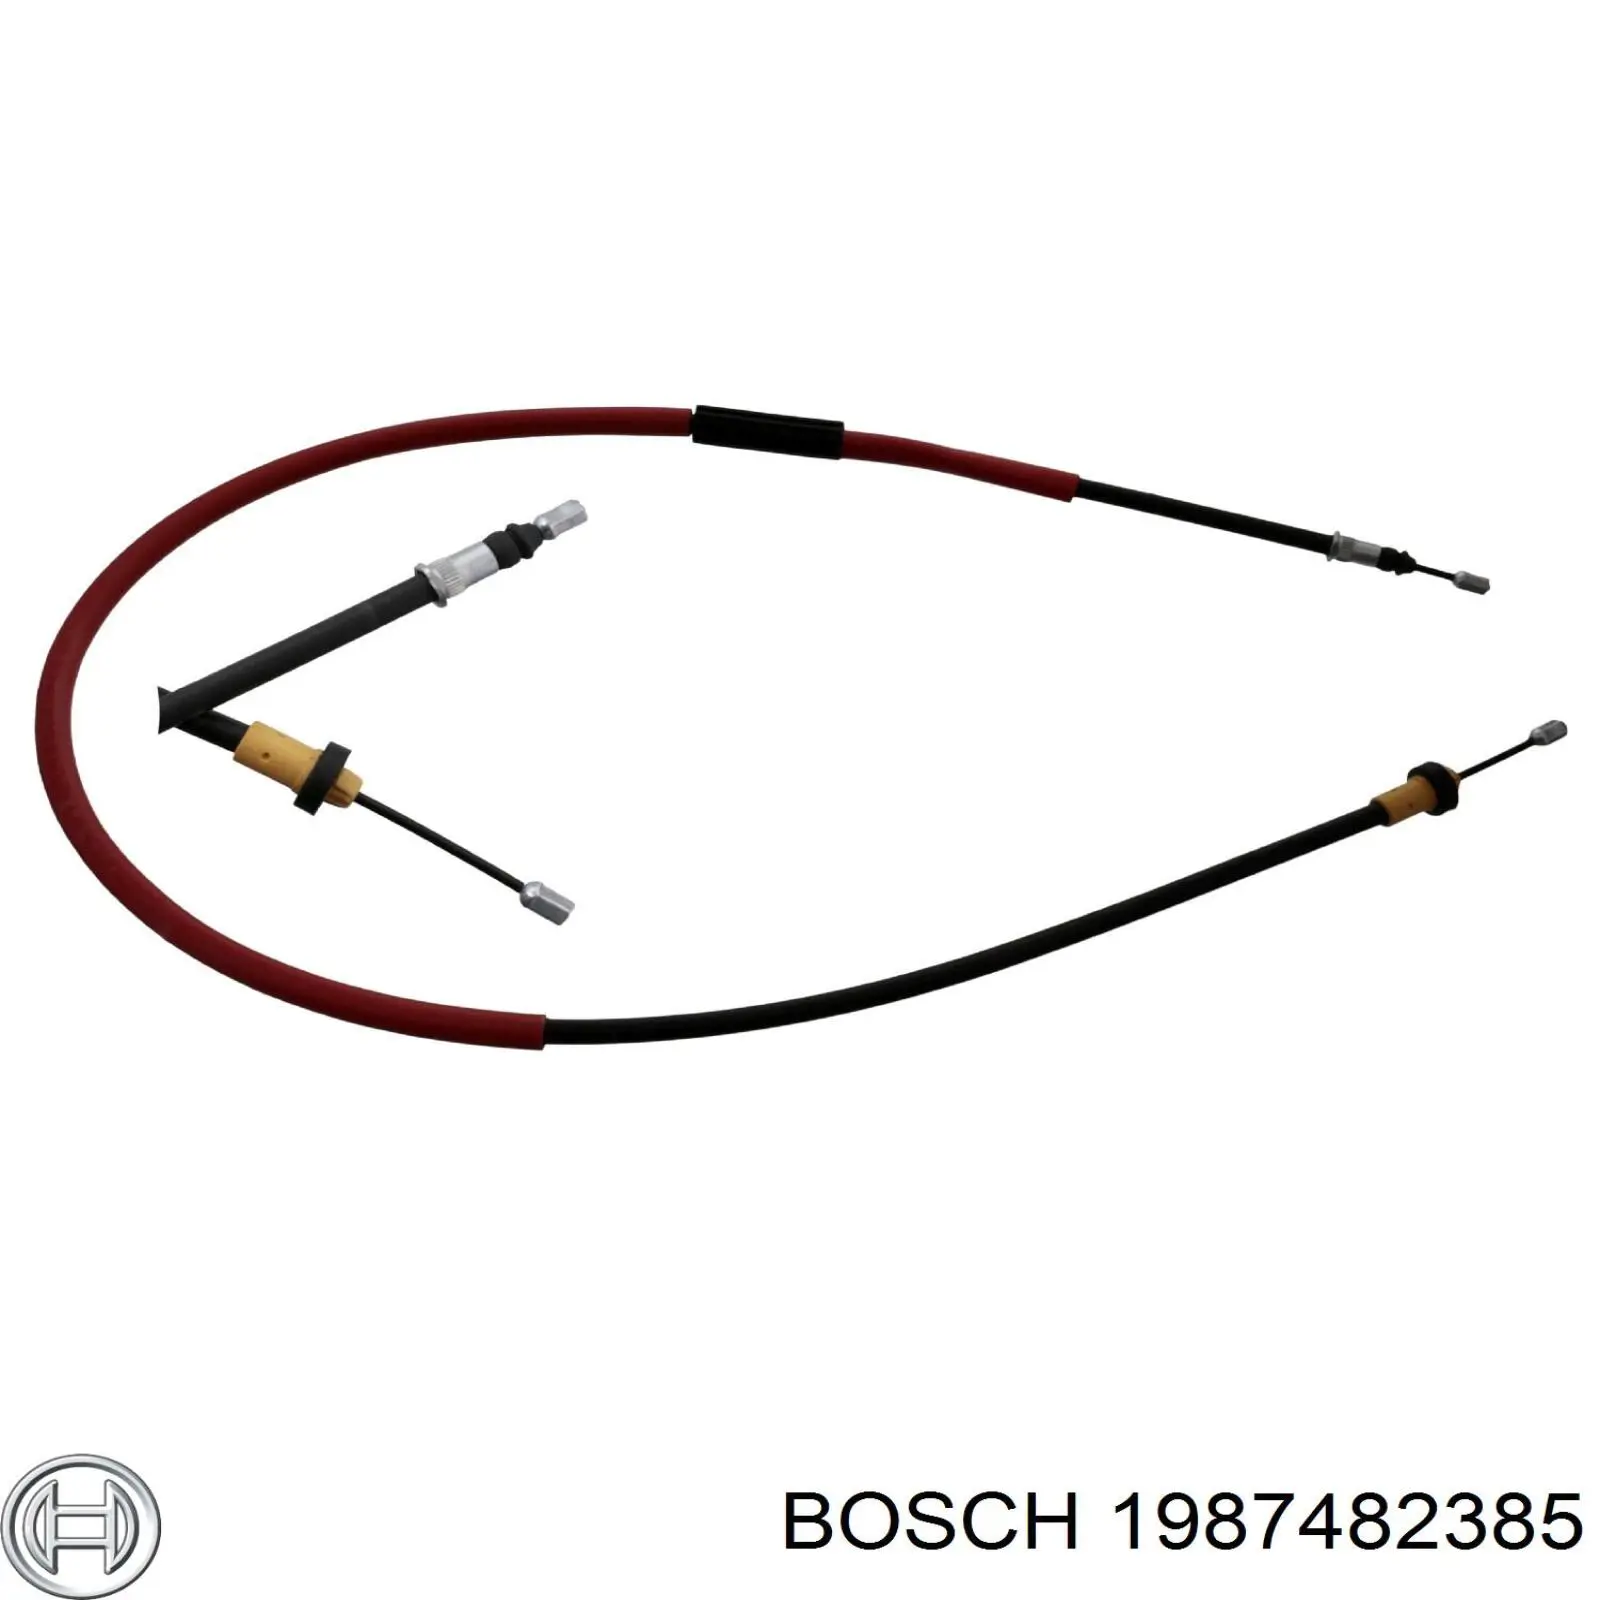 1987482385 Bosch cable de freno de mano trasero izquierdo